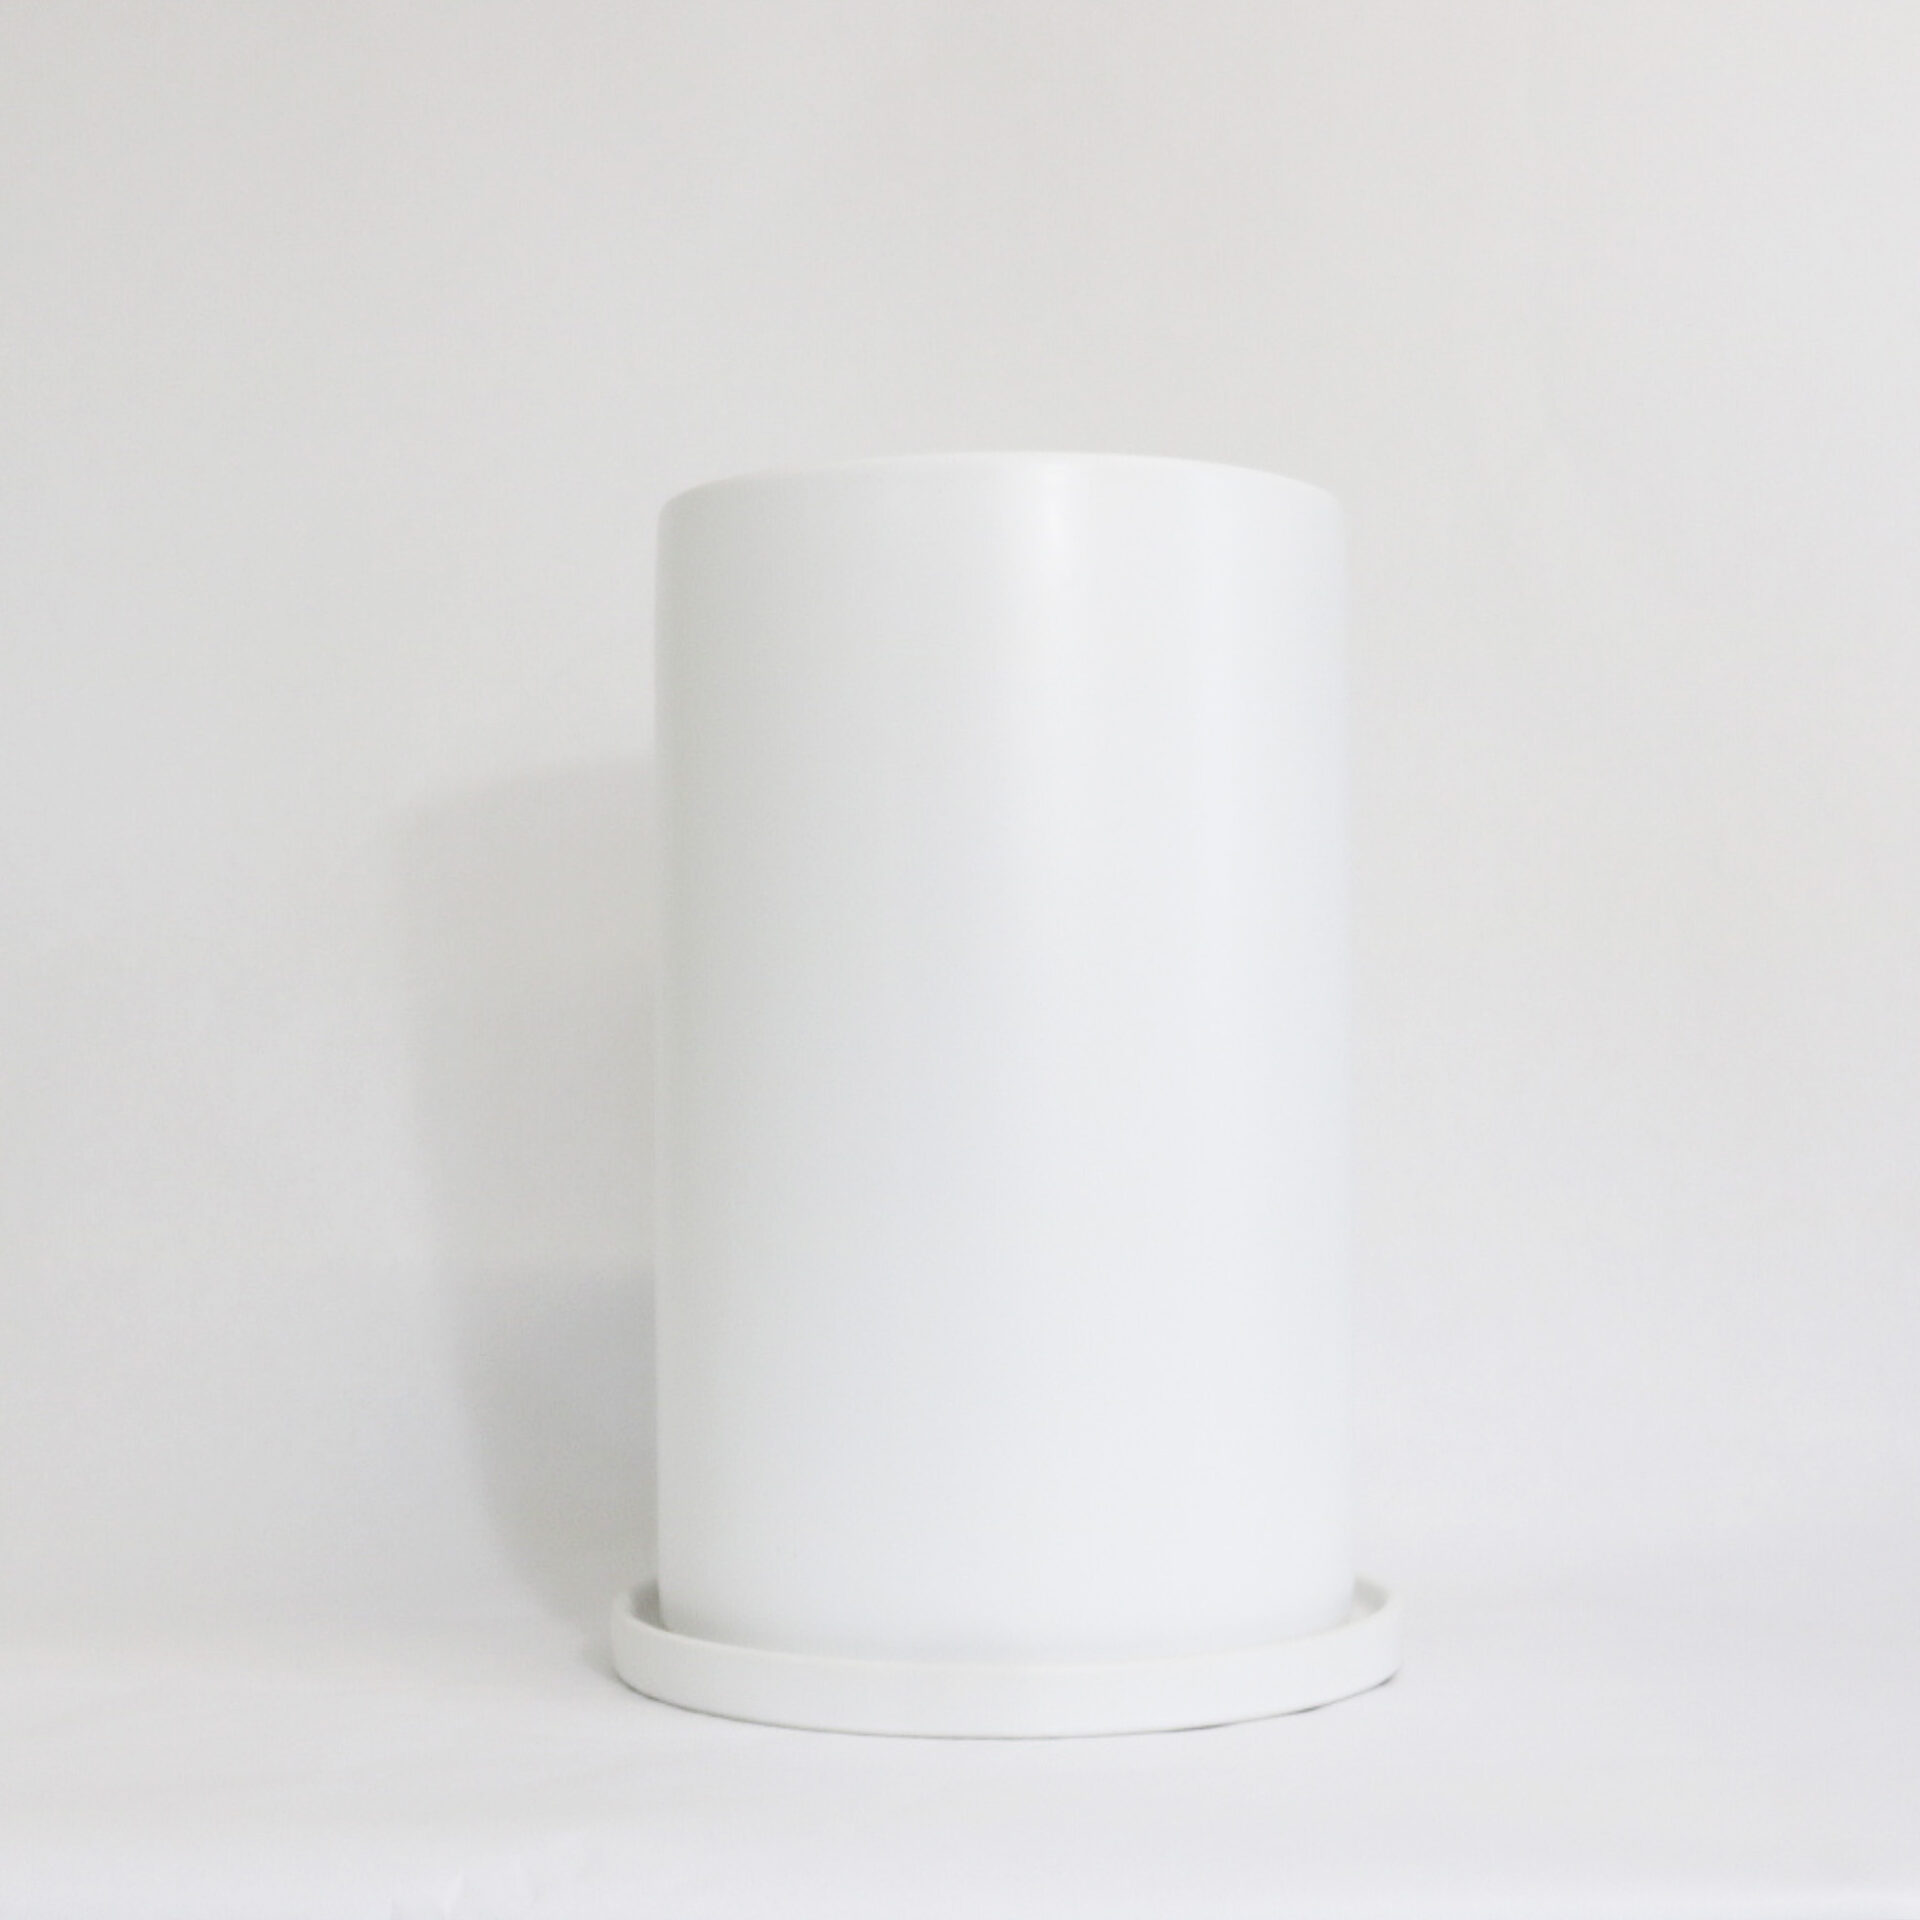 タワー型植木鉢 | 植木鉢 鉢カバー 陶器 通販 観葉植物 のっぽな円柱さんLL